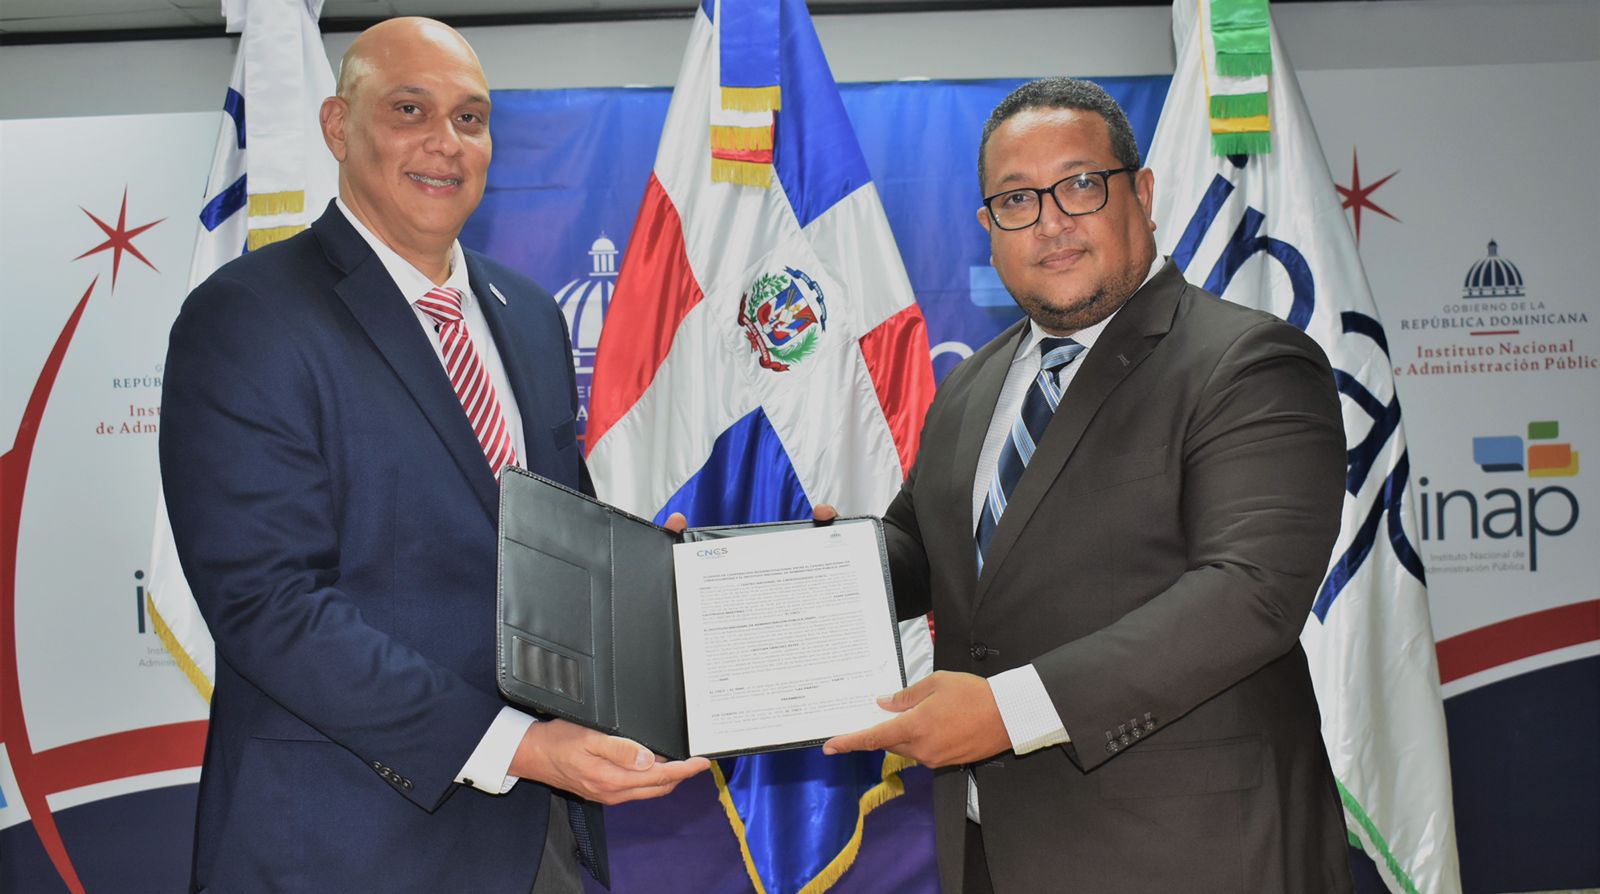 Centro Nacional de Ciberseguridad y el Instituto Nacional de la Administración Pública firman de acuerdo de colaboración